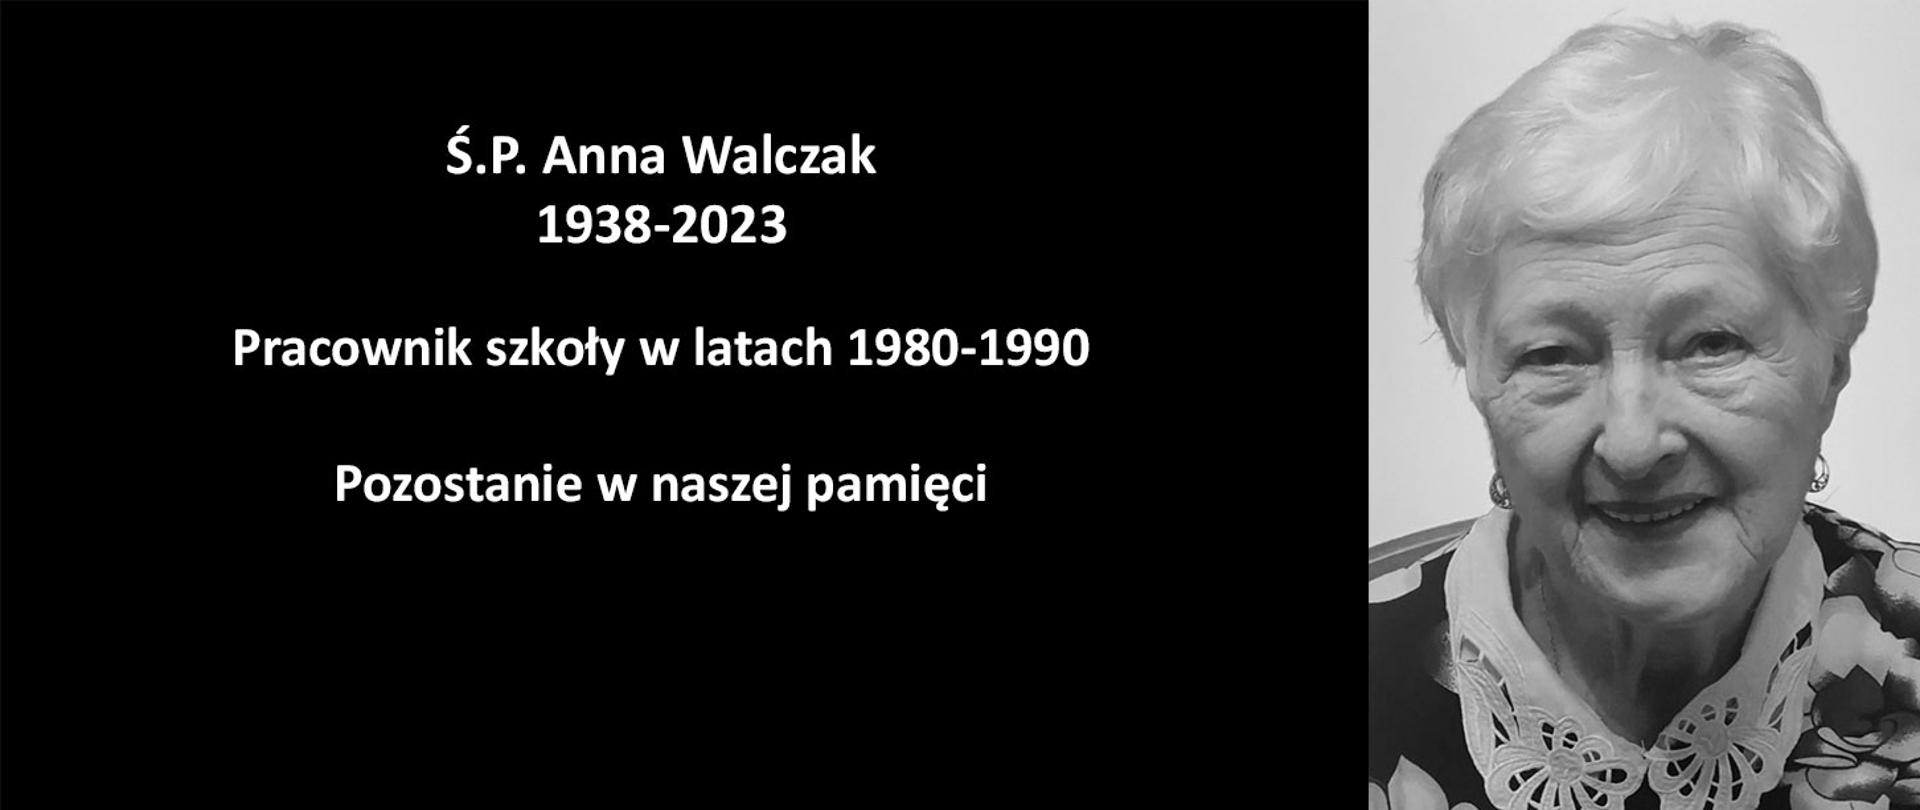 Grafika na czarnym tle przedstawiająca tekst z lewej strony oraz czarno-białe zdjęcie Ś.P. Anny Walczak z prawej.